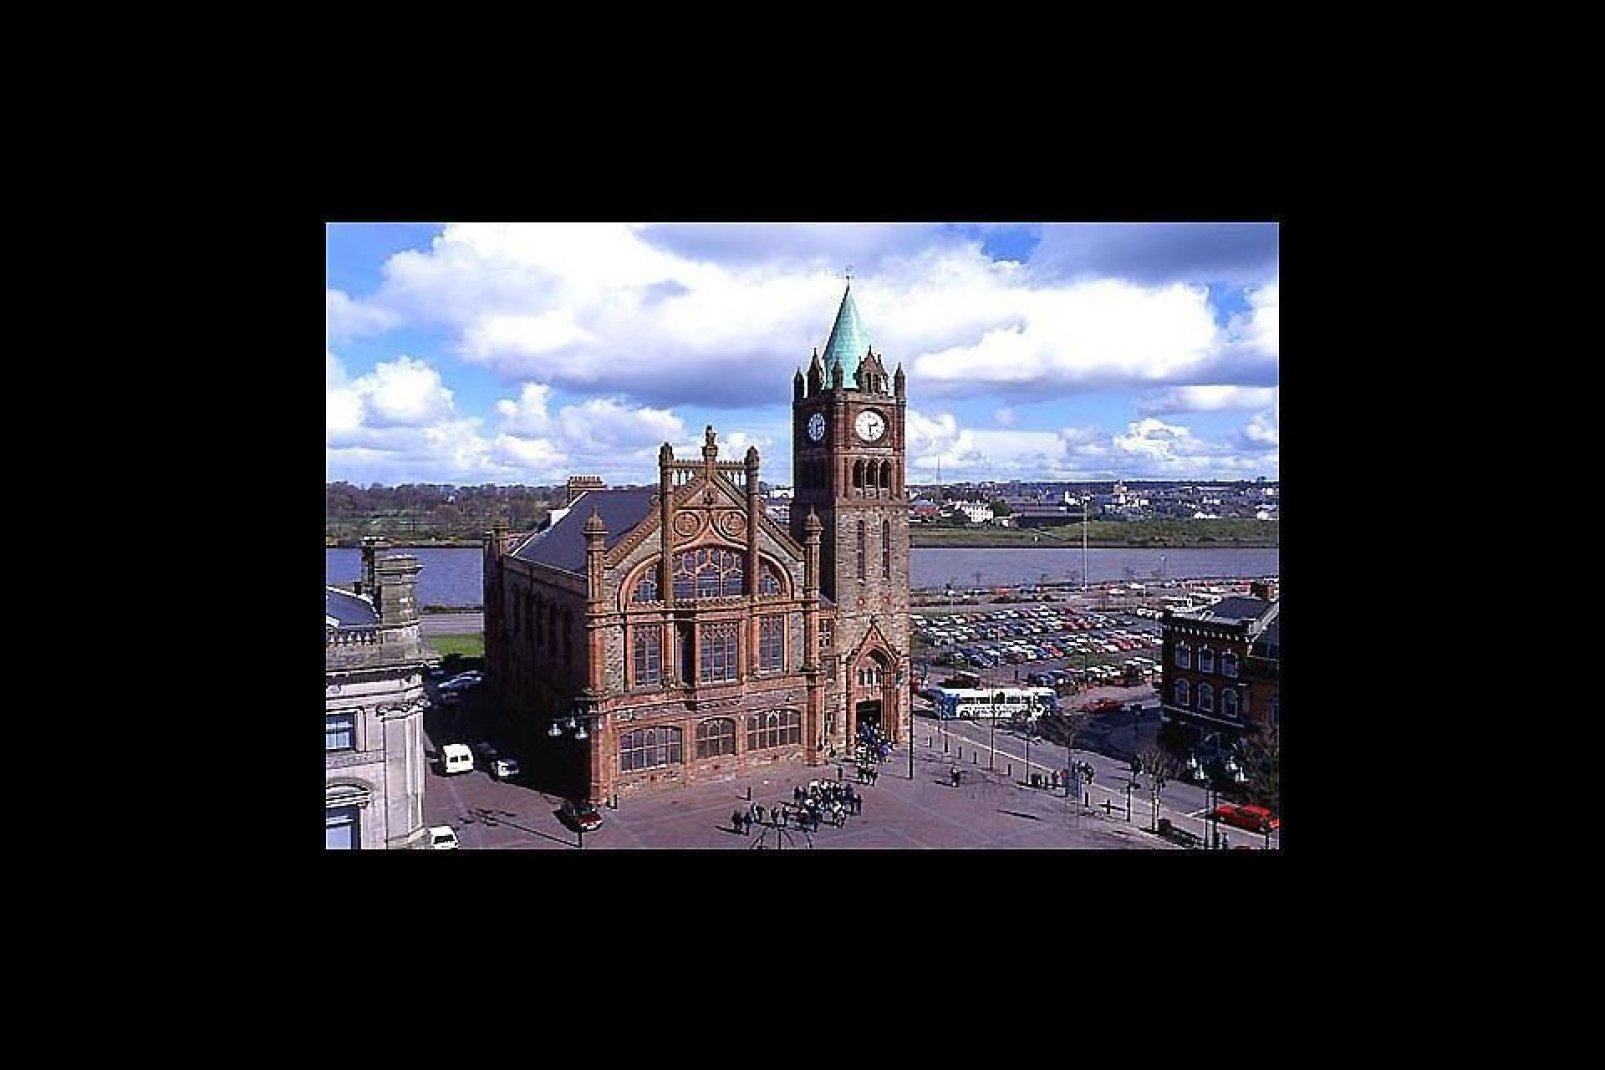 Derry, también llamada Londonderry, es la segunda ciudad más grande de Irlanda del Norte. La antigua ciudad fortificada se encuentra en la orilla oeste del Foyle, un río cruzado por dos puentes.